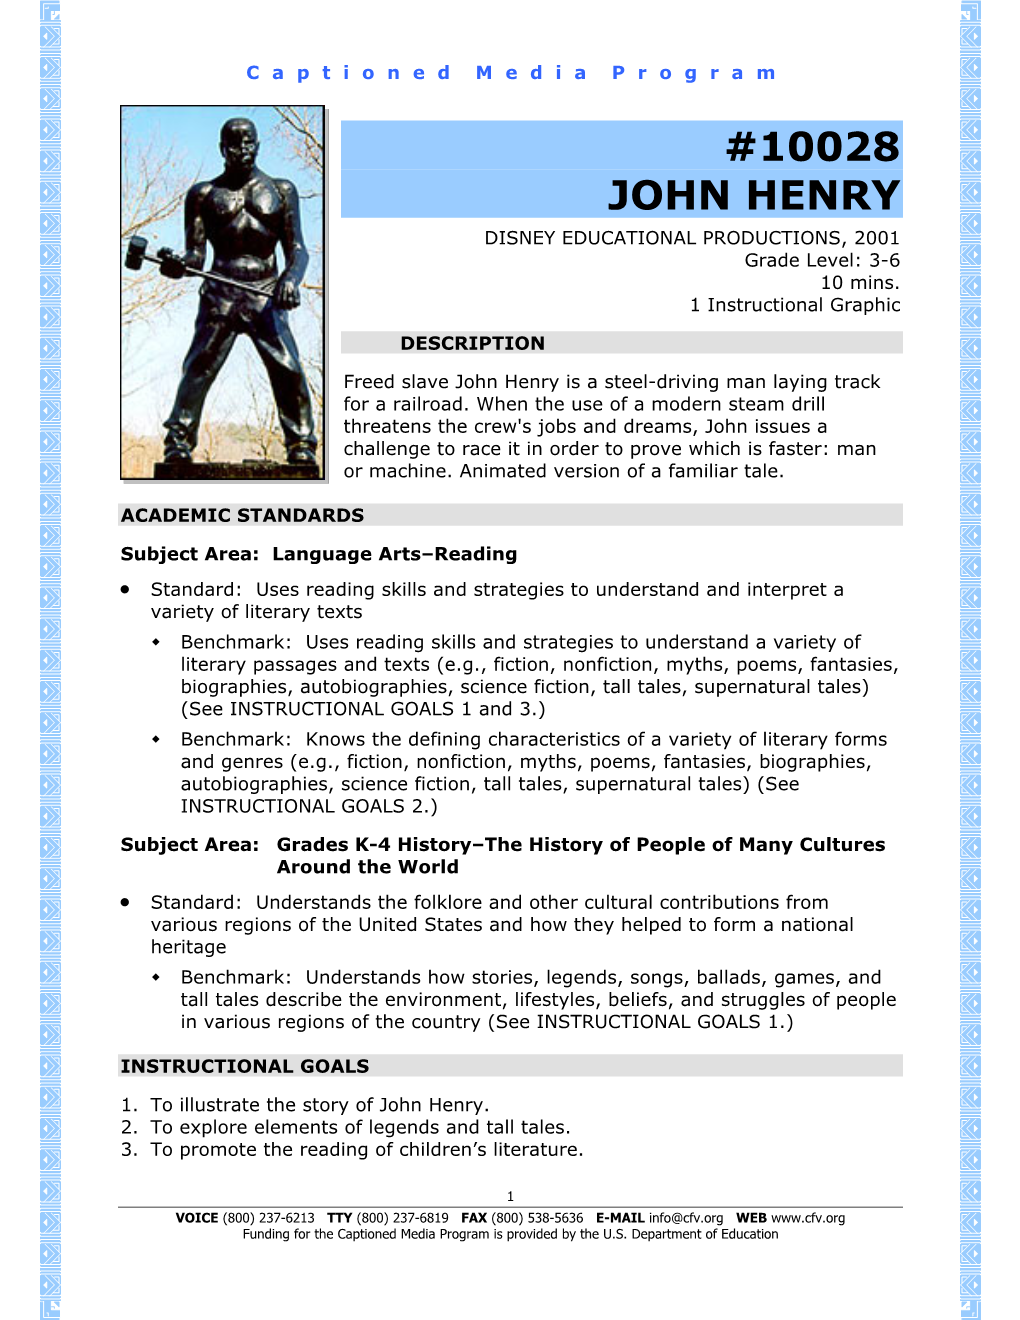 10028 John Henry